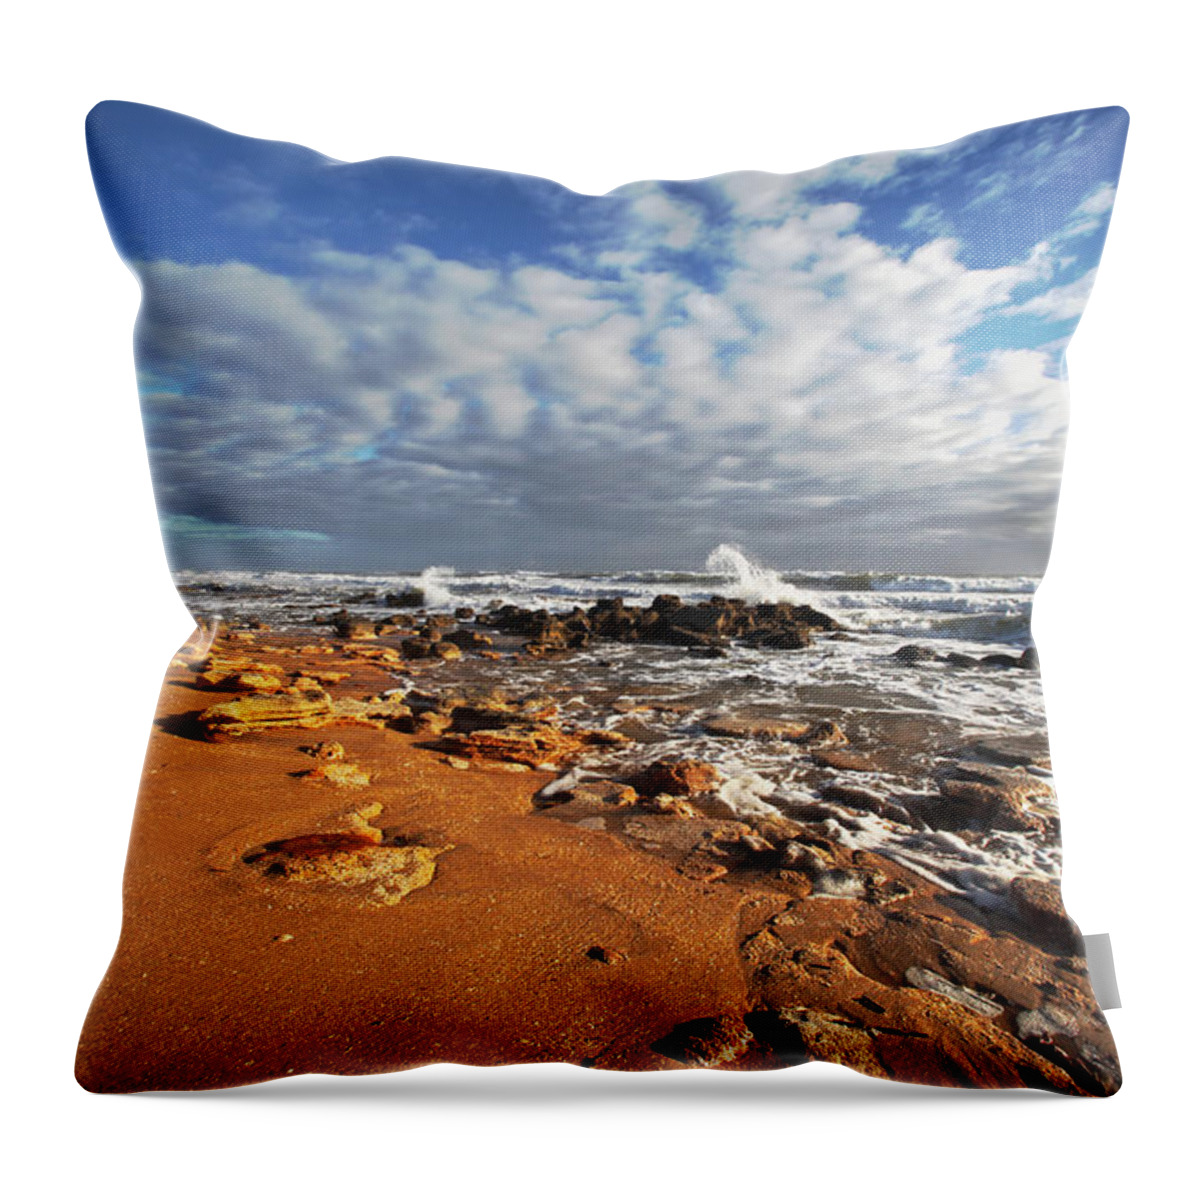  Waves Throw Pillow featuring the photograph Beach View by Robert Och